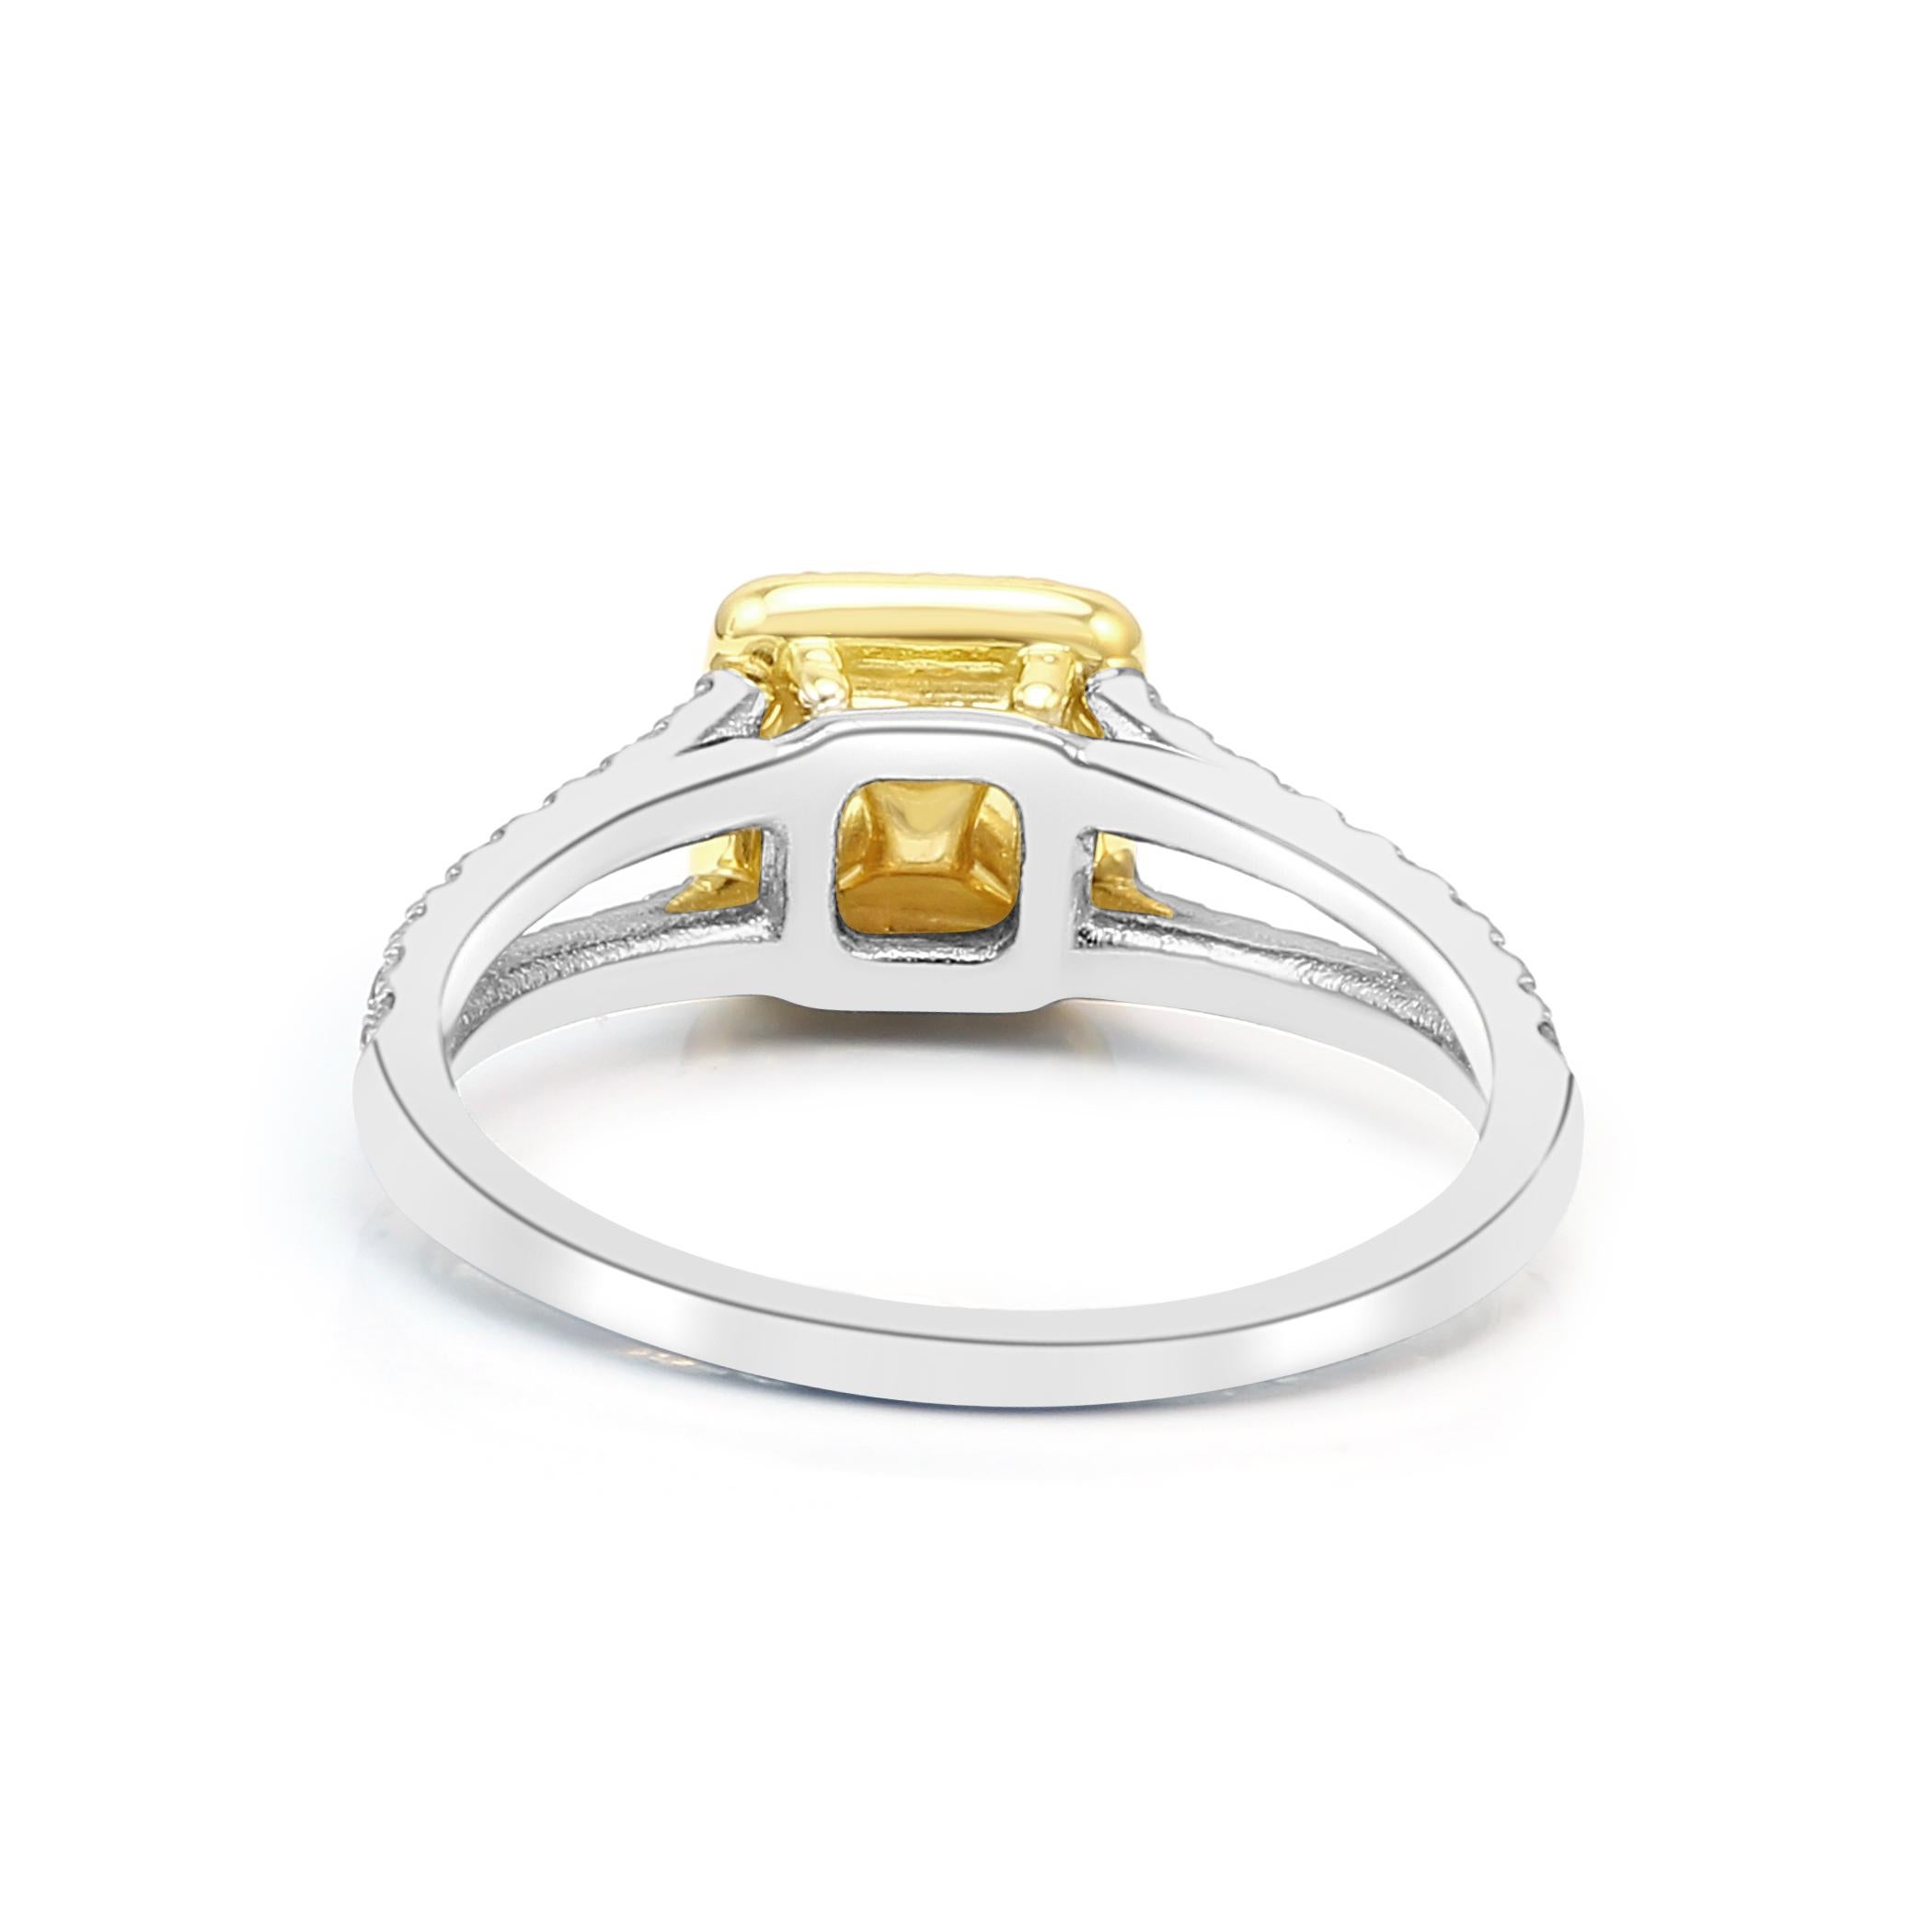 Emerald Emerald Cut White Diamond Halo Two Color Gold Bridal Fashion Ring 5